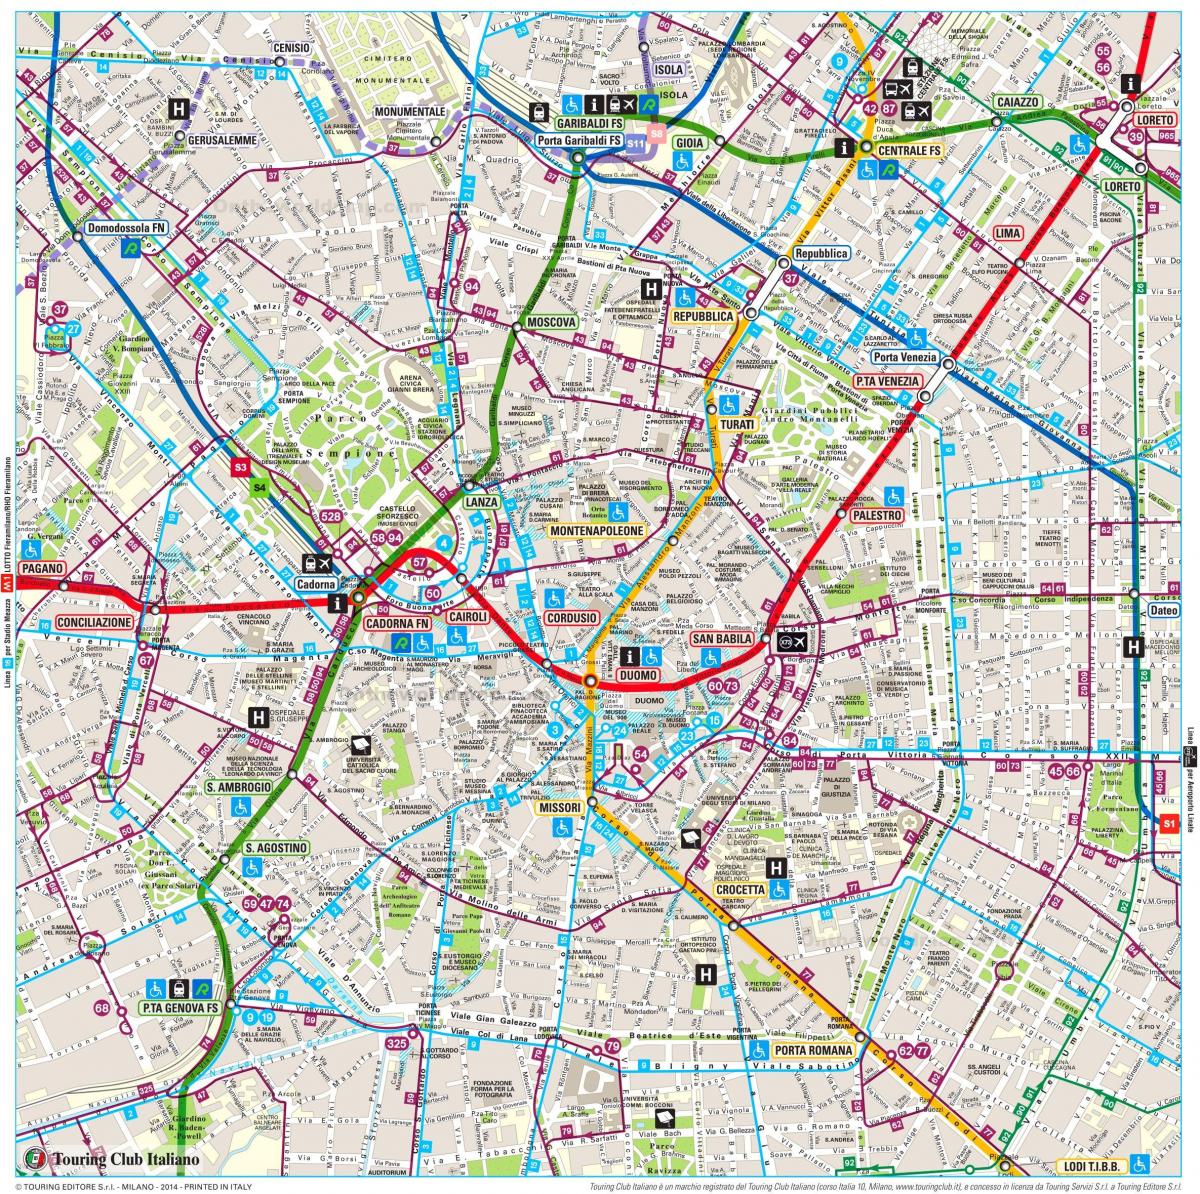 Mappa delle strade di Milano